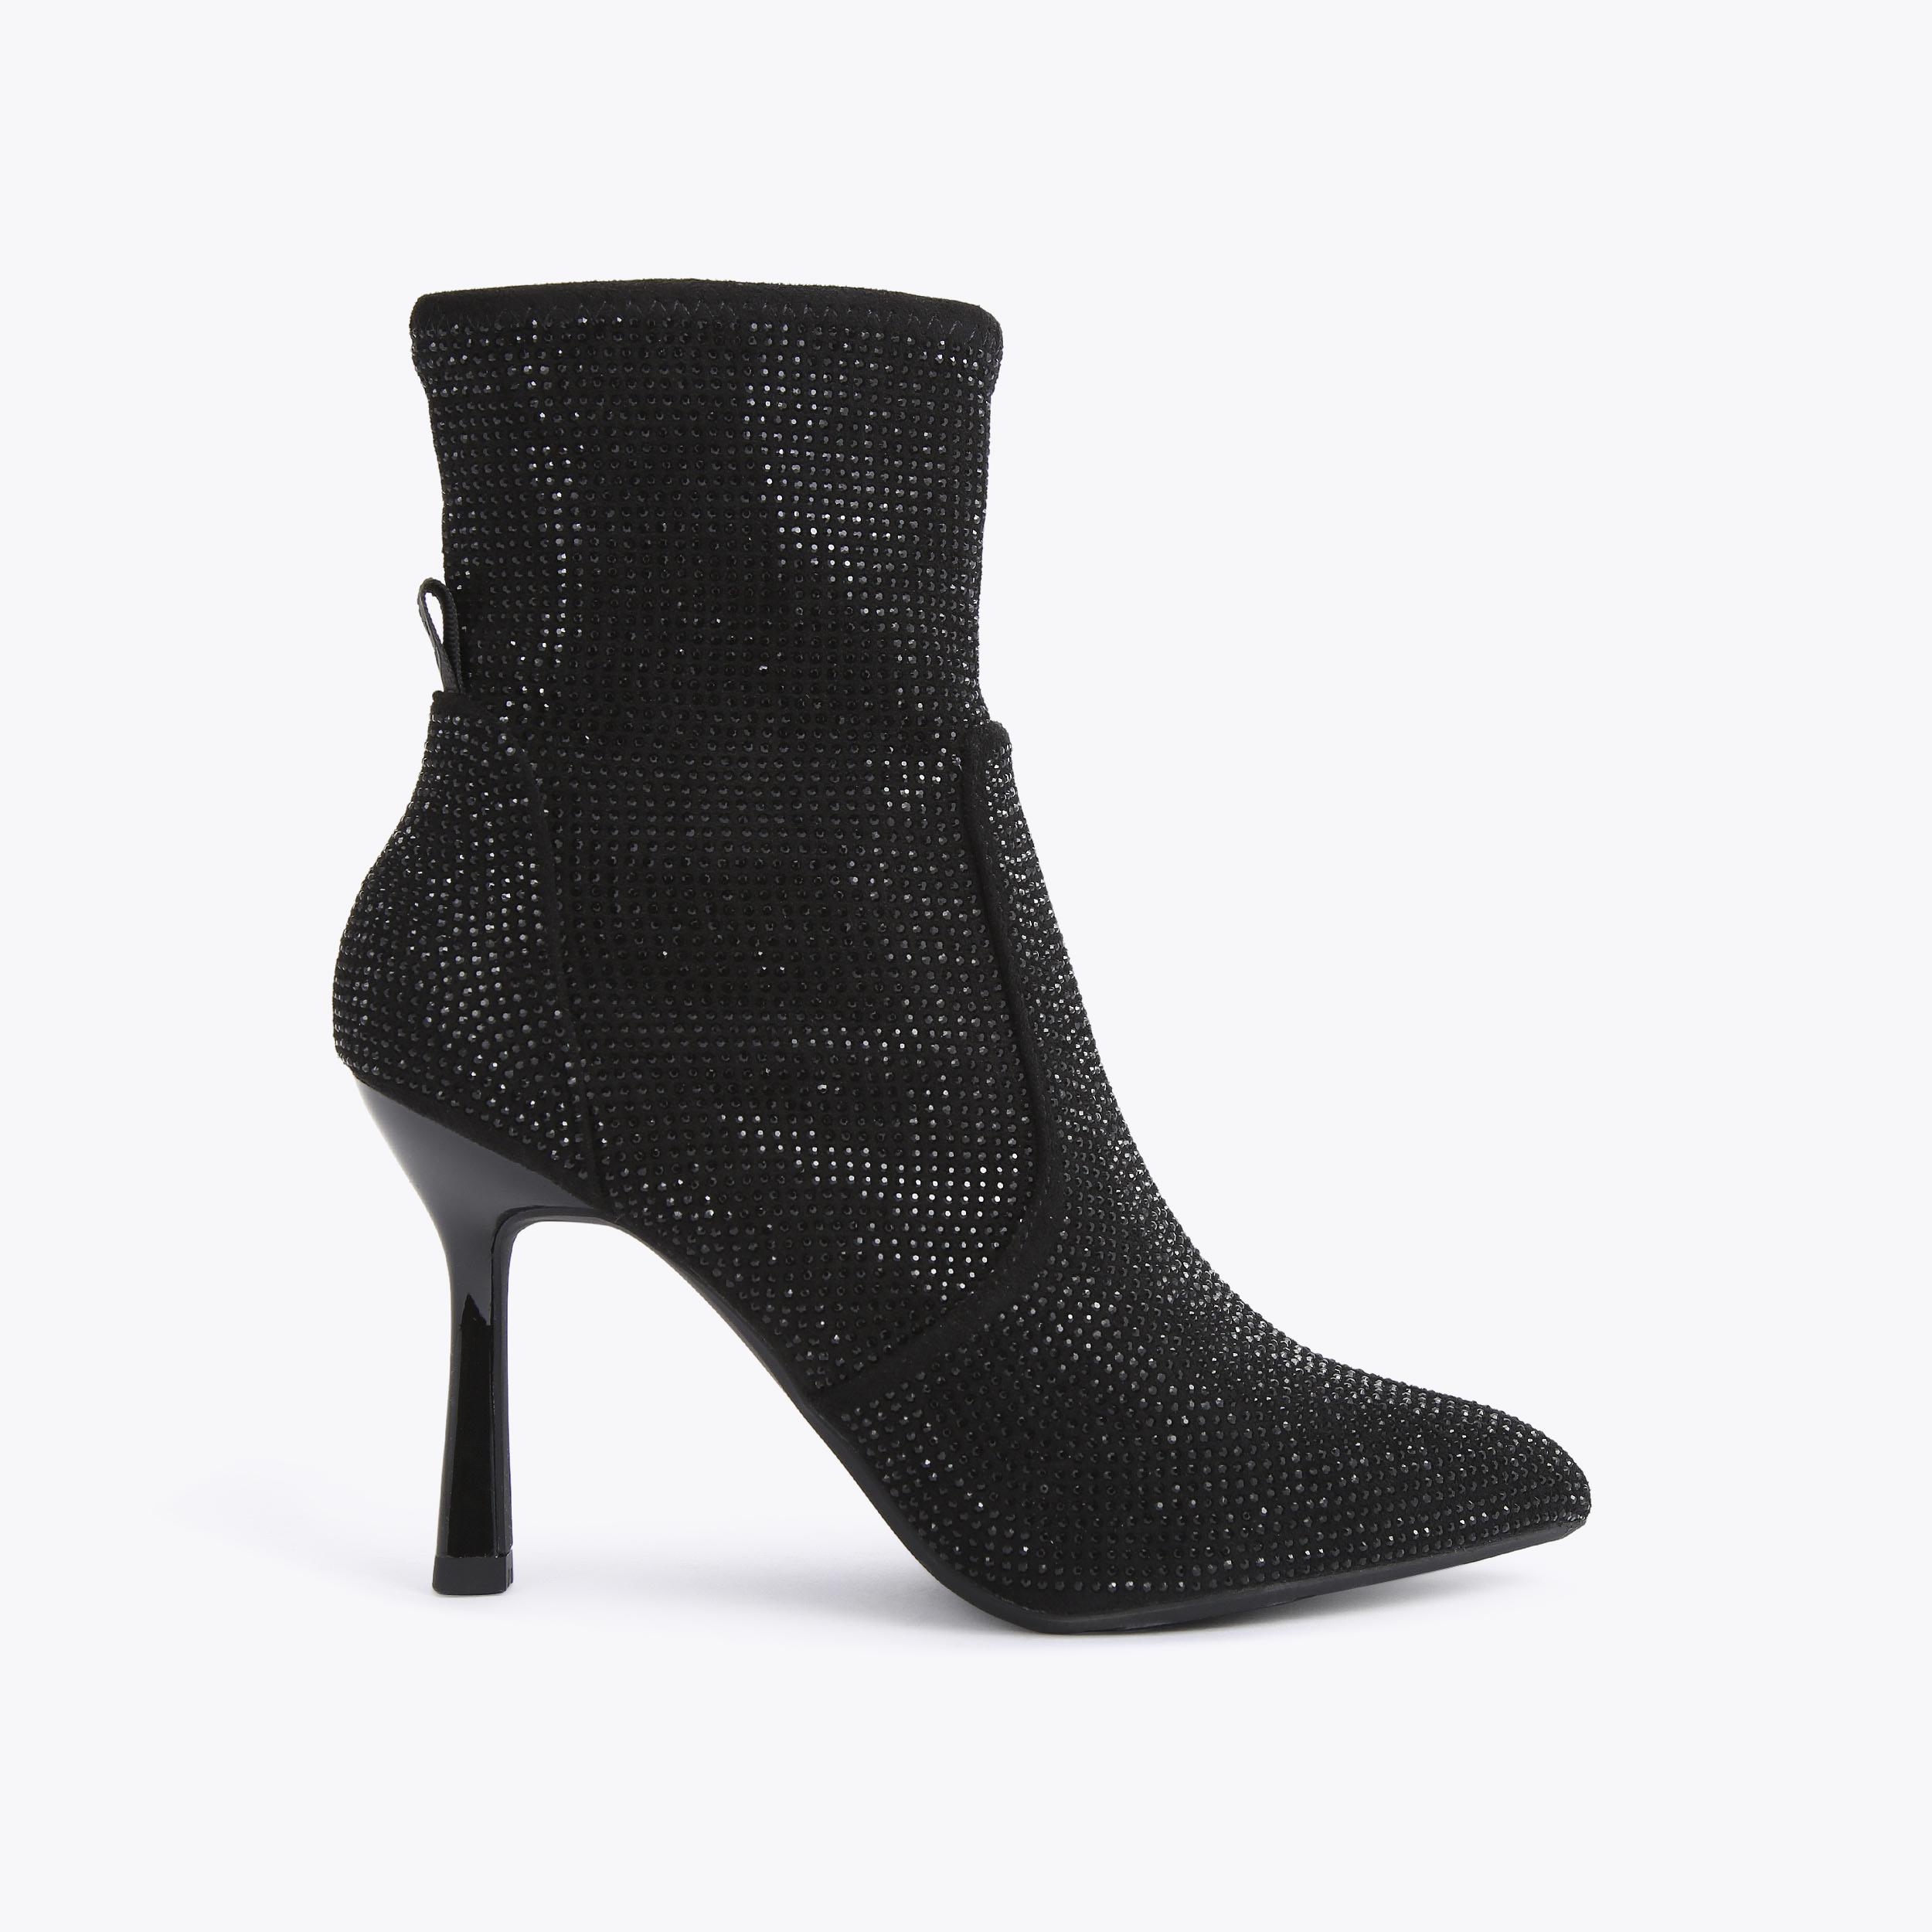 FRANCESCA BLING Black Crystal Ankle Boots by KG KURT GEIGER